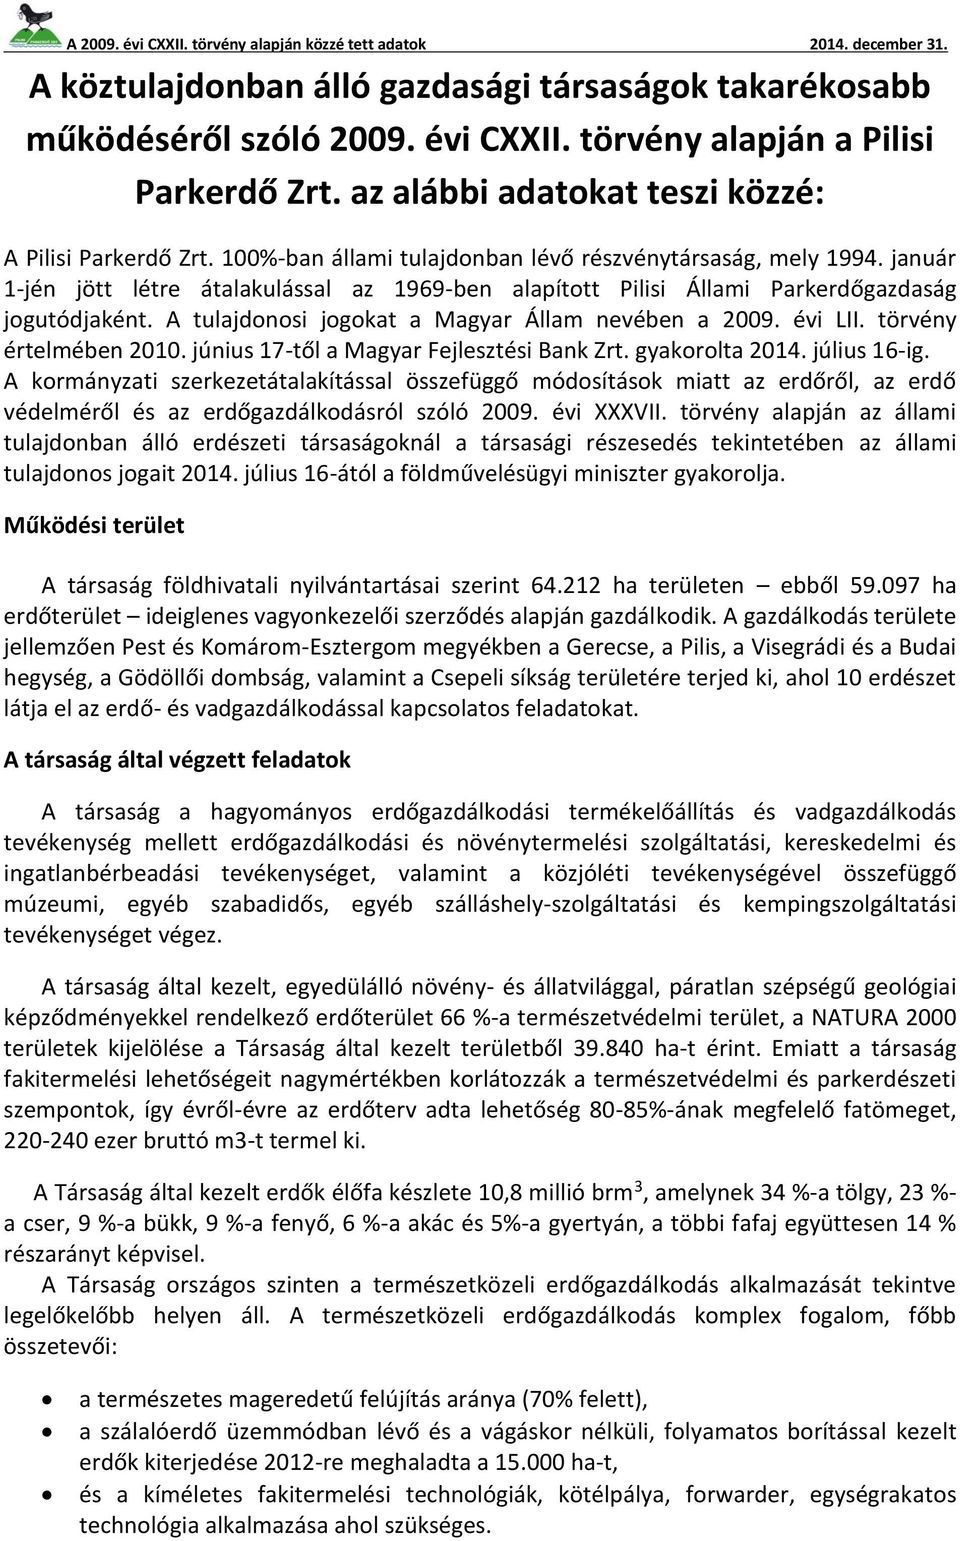 A tulajdonosi jogokat a Magyar Állam nevében a 2009. évi LII. törvény értelmében 2010. június 17-től a Magyar Fejlesztési Bank Zrt. gyakorolta 2014. július 16-ig.